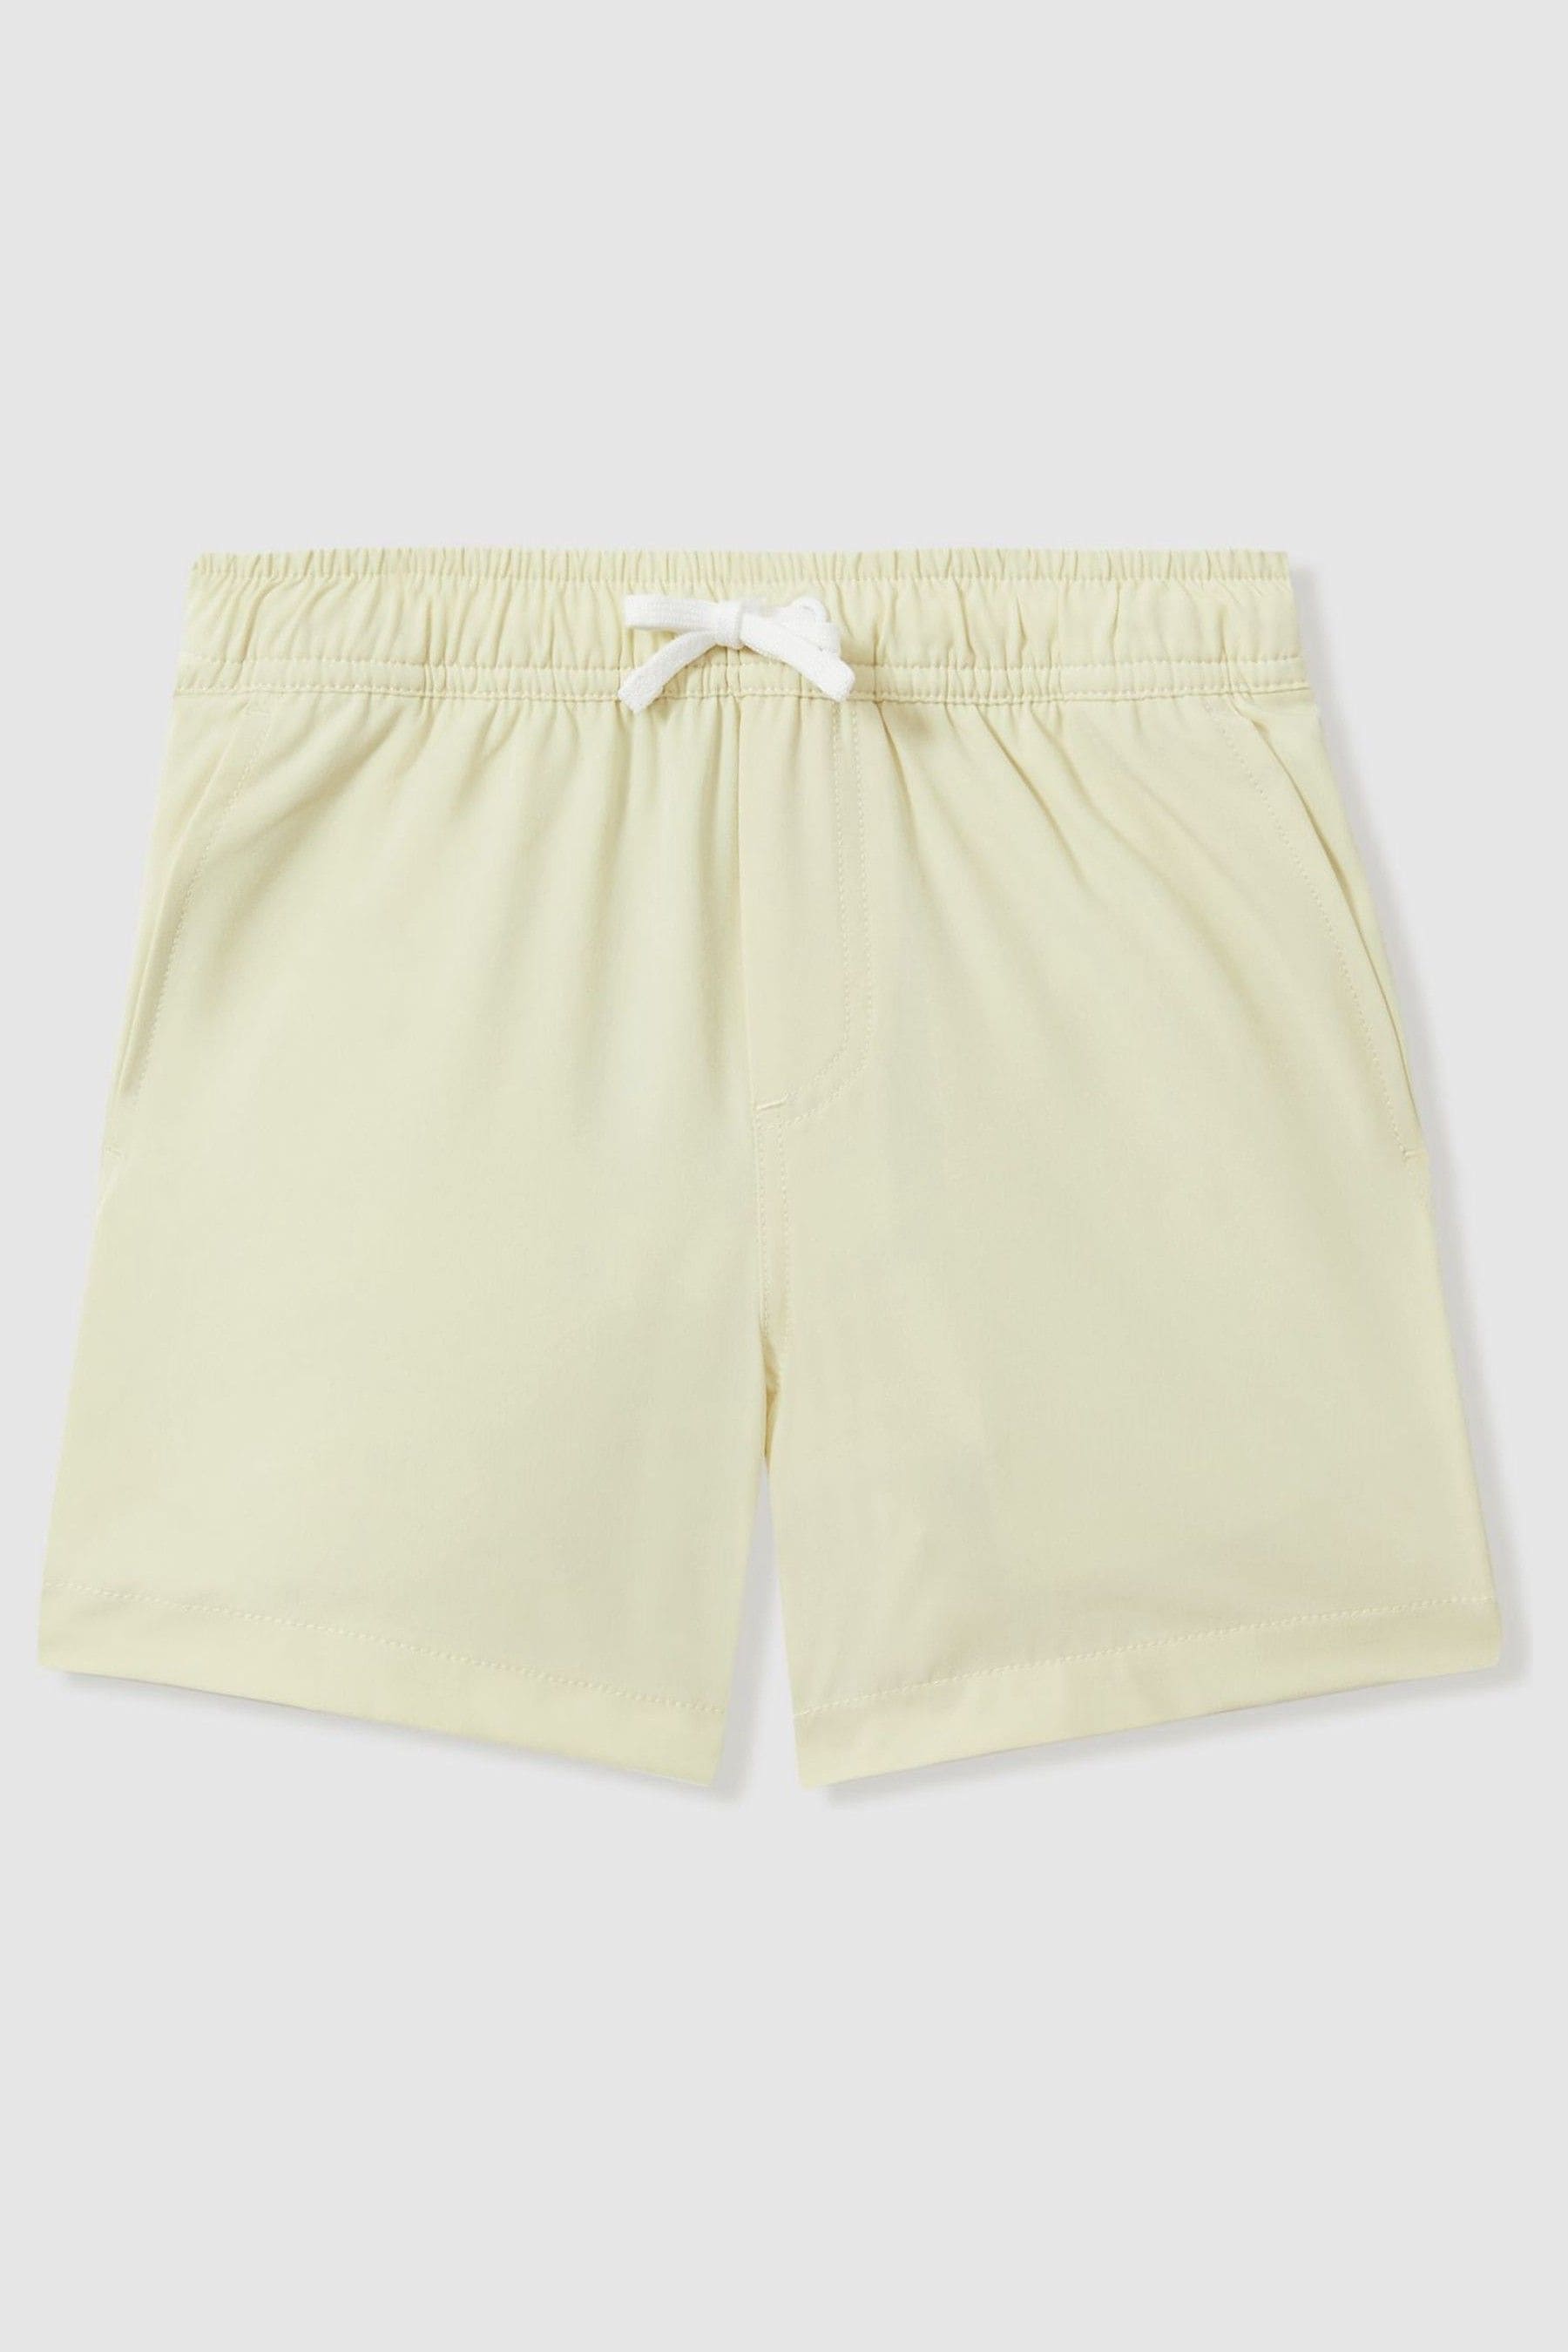 Shop Reiss Shore - Lemon Plain Drawstring Waist Swim Shorts, Uk 7-8 Yrs